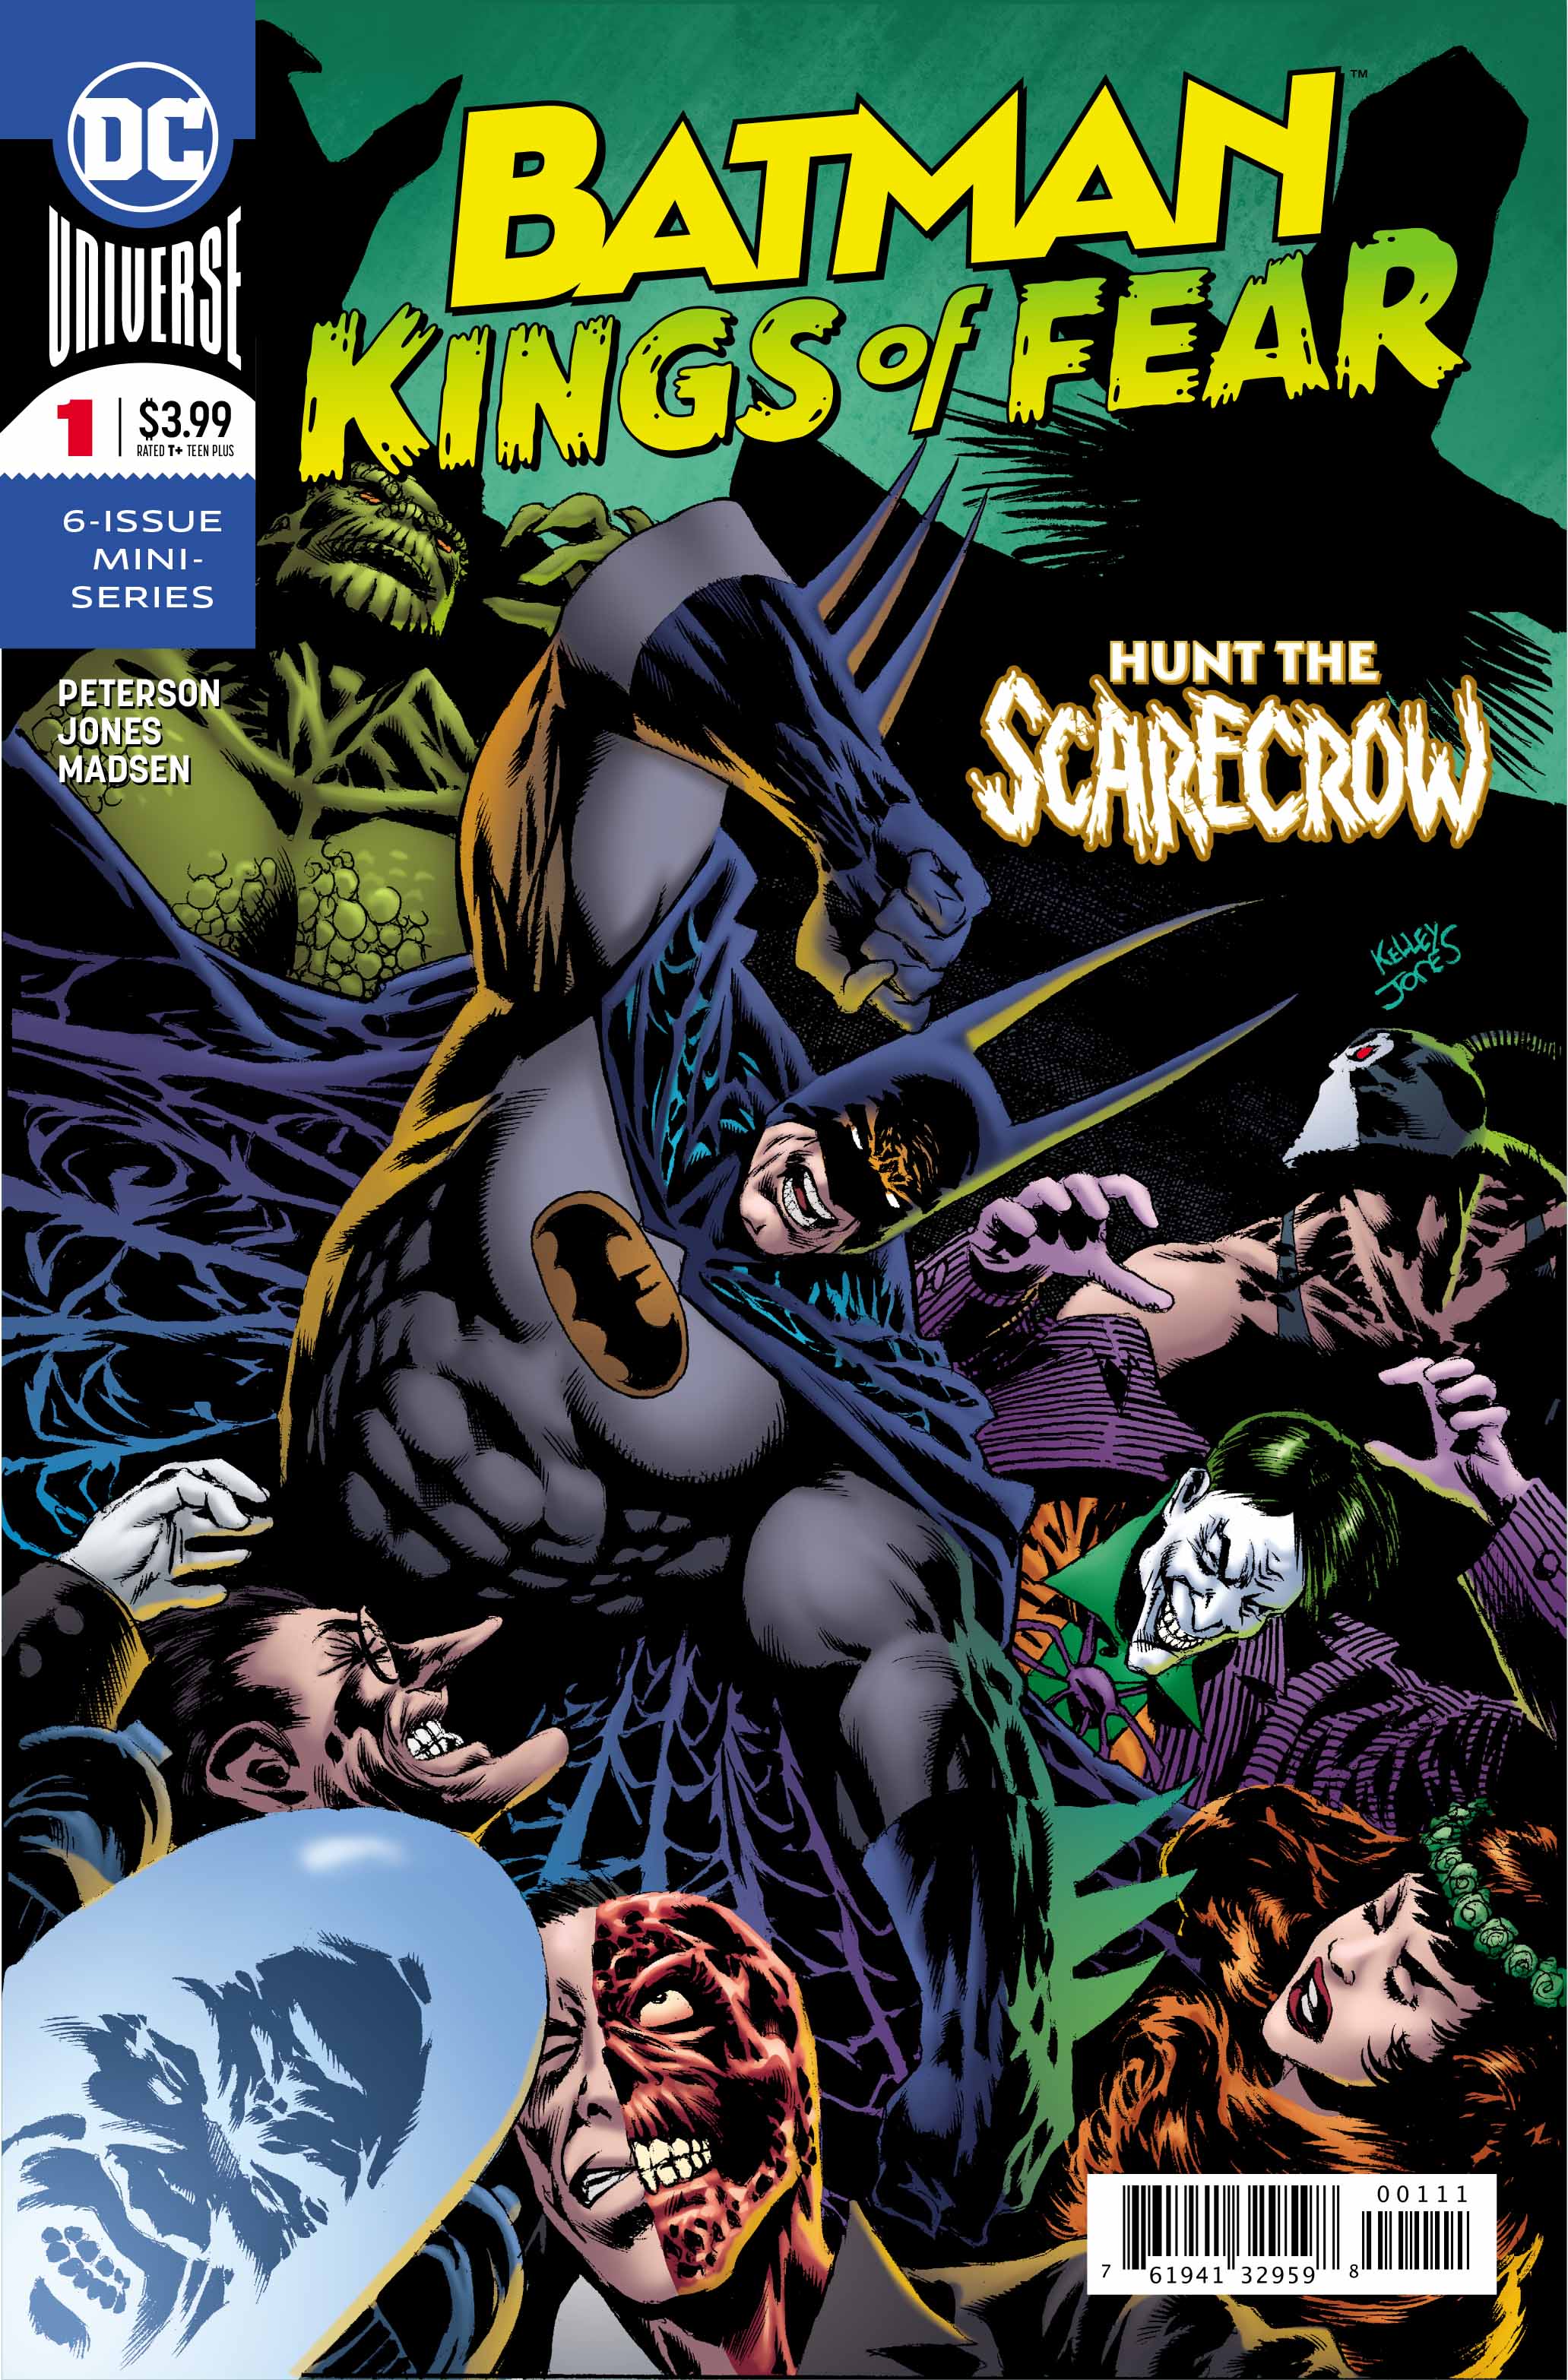 Batman: Kings of Fear #1 Review